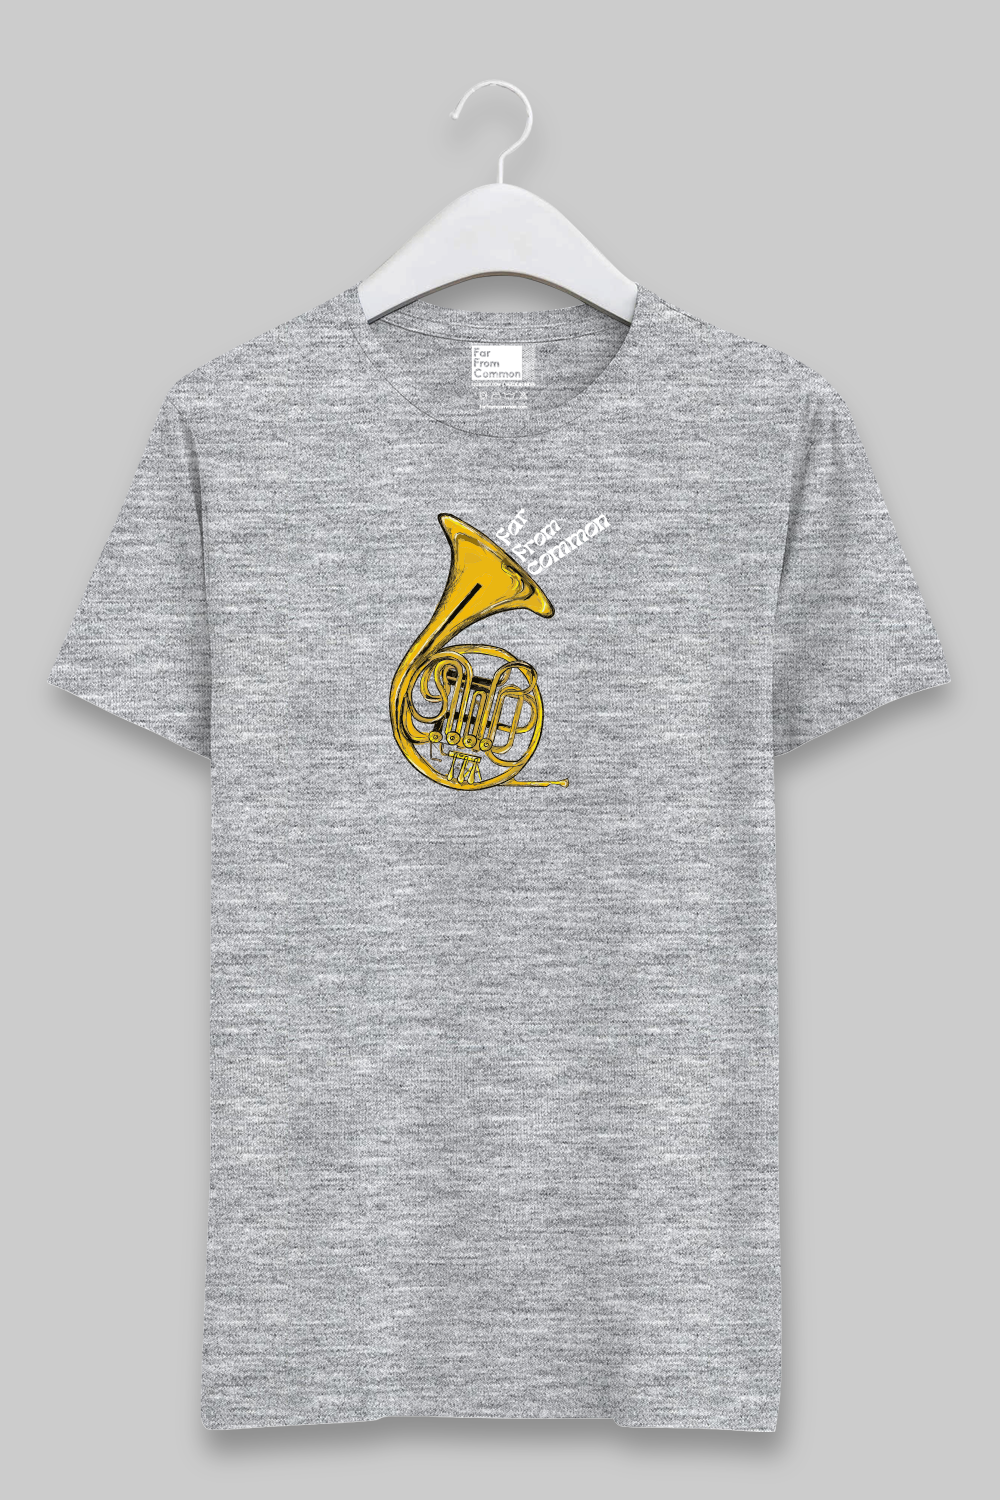 Horn Unisex Melange Grey T-shirt